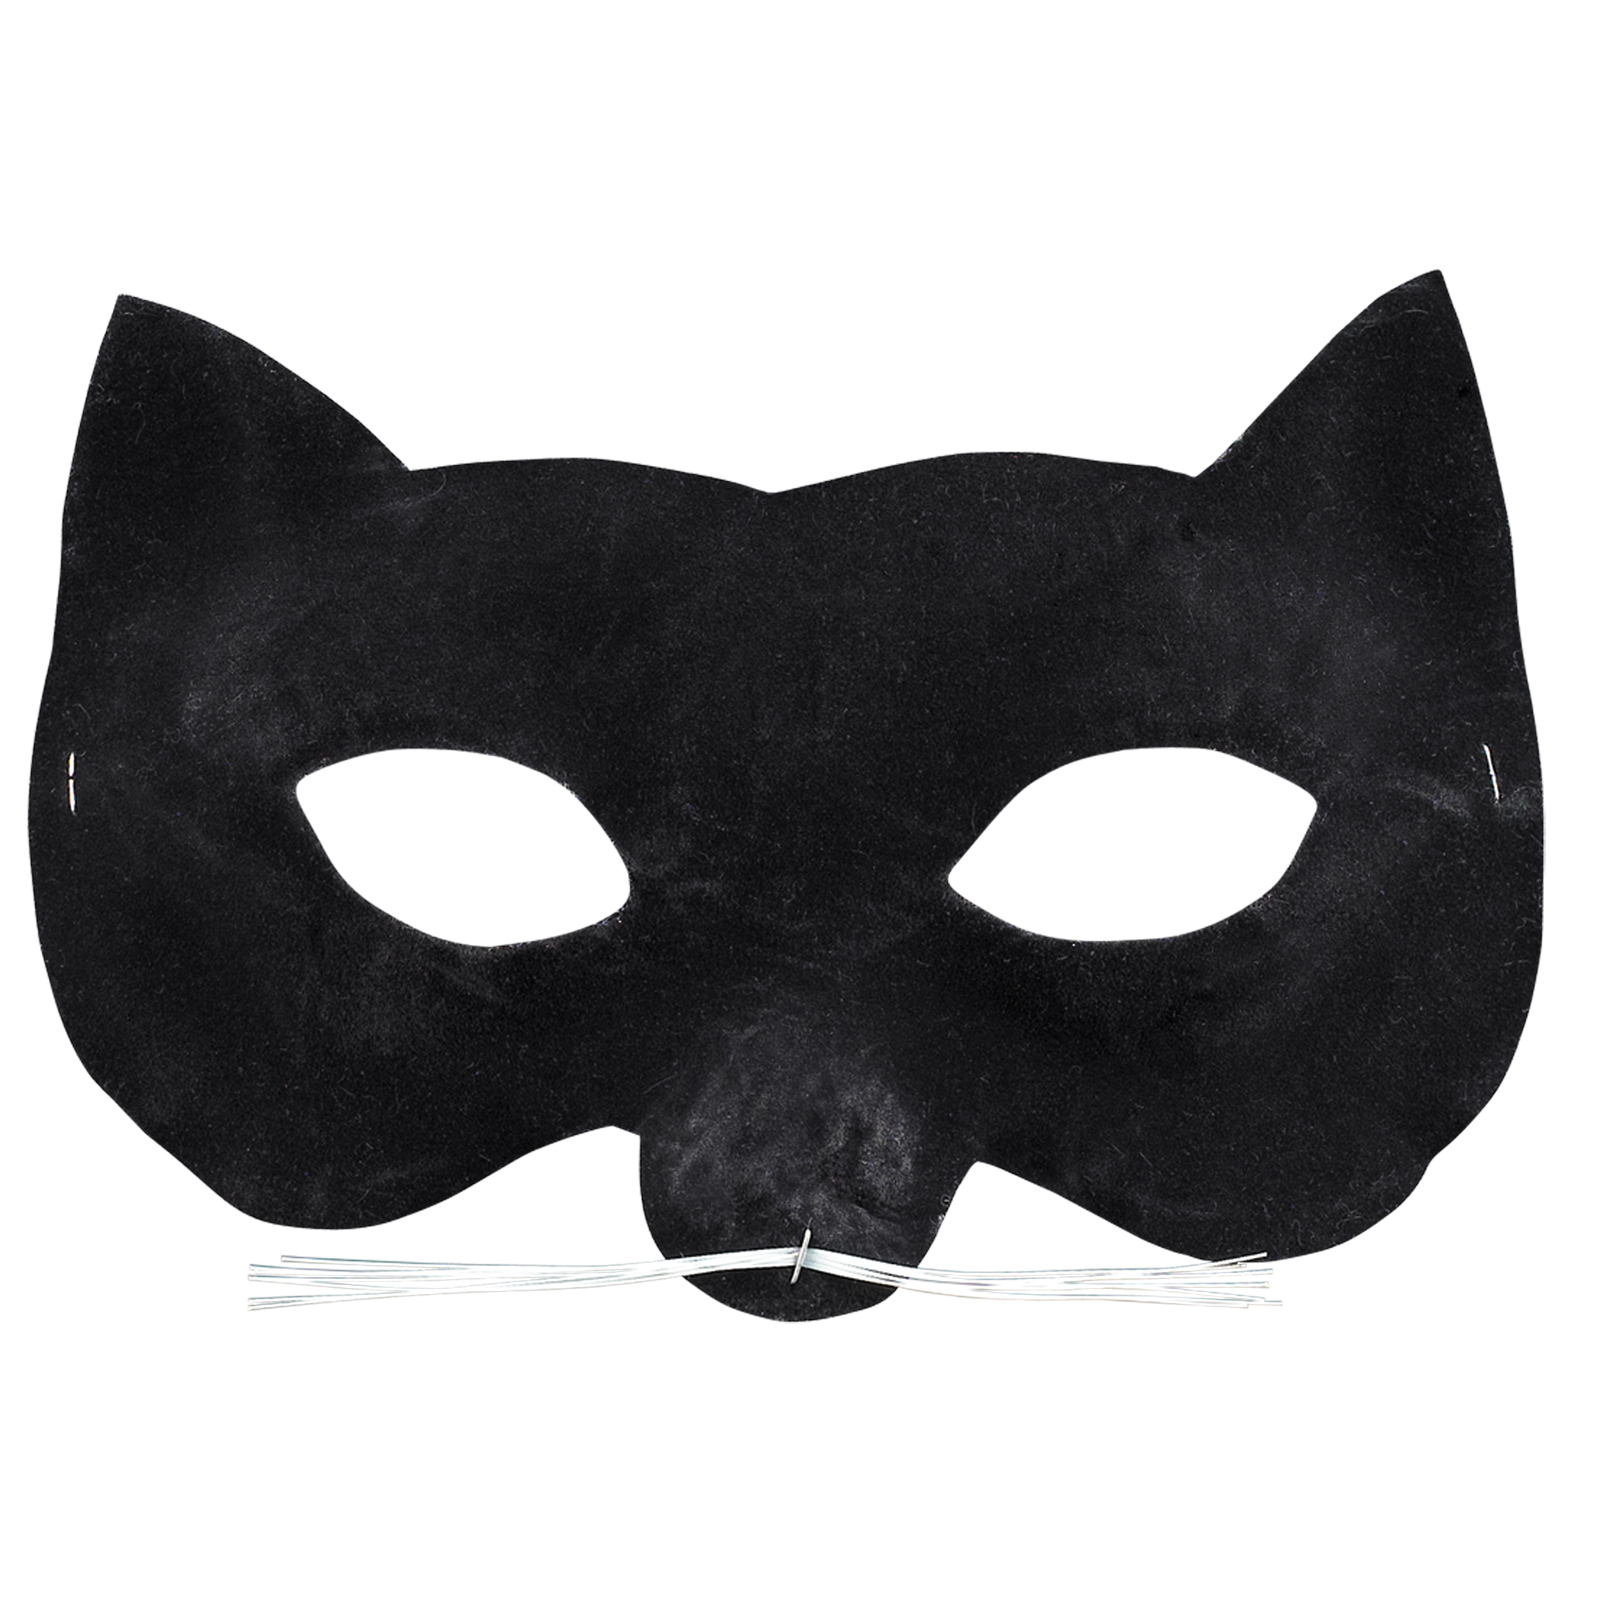 Маска кошки и хвост. Маска кошки. Карнавальная маска кота. Маска черной кошки. Карнавальная маска "кошка".